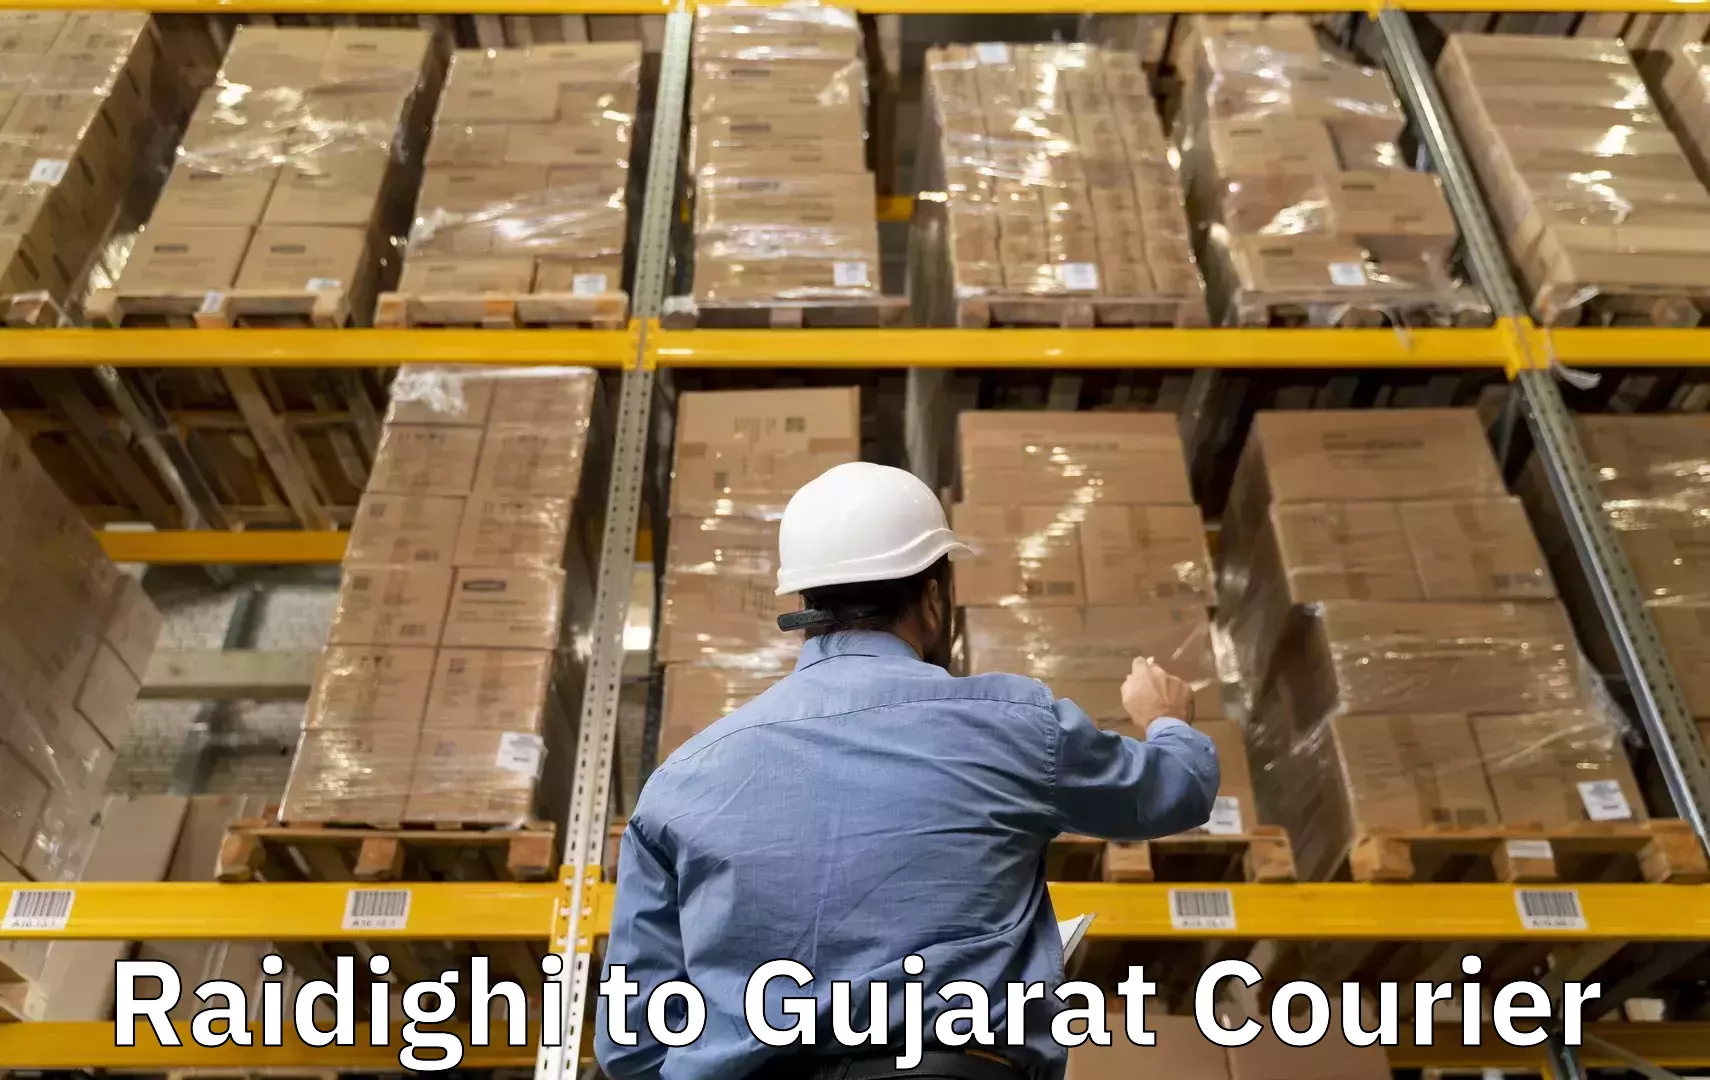 Luggage courier network Raidighi to IIIT Surat